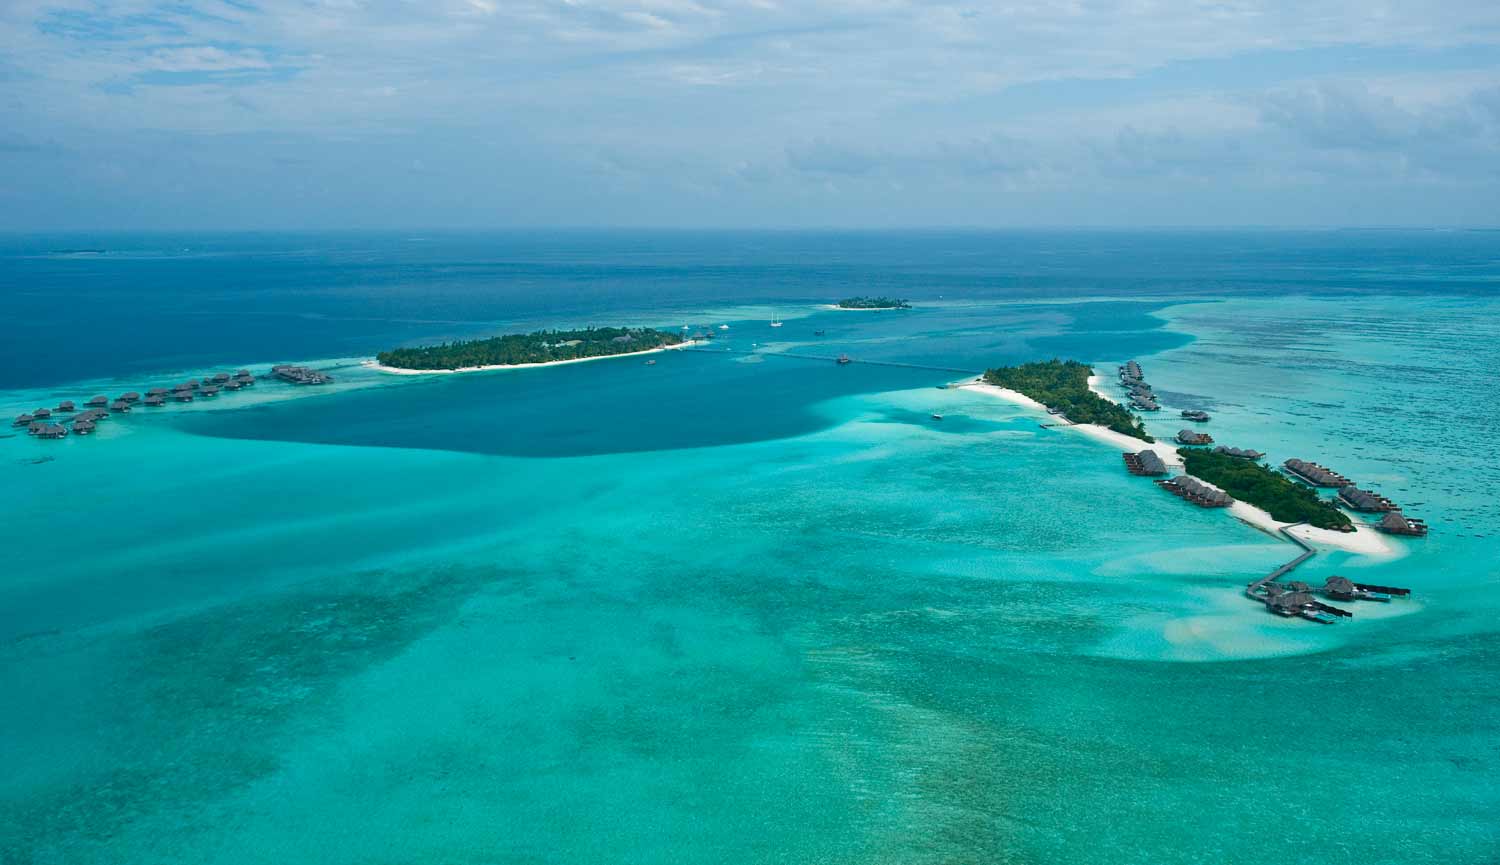 Conrad Resort Maldives, a vista de pájaro